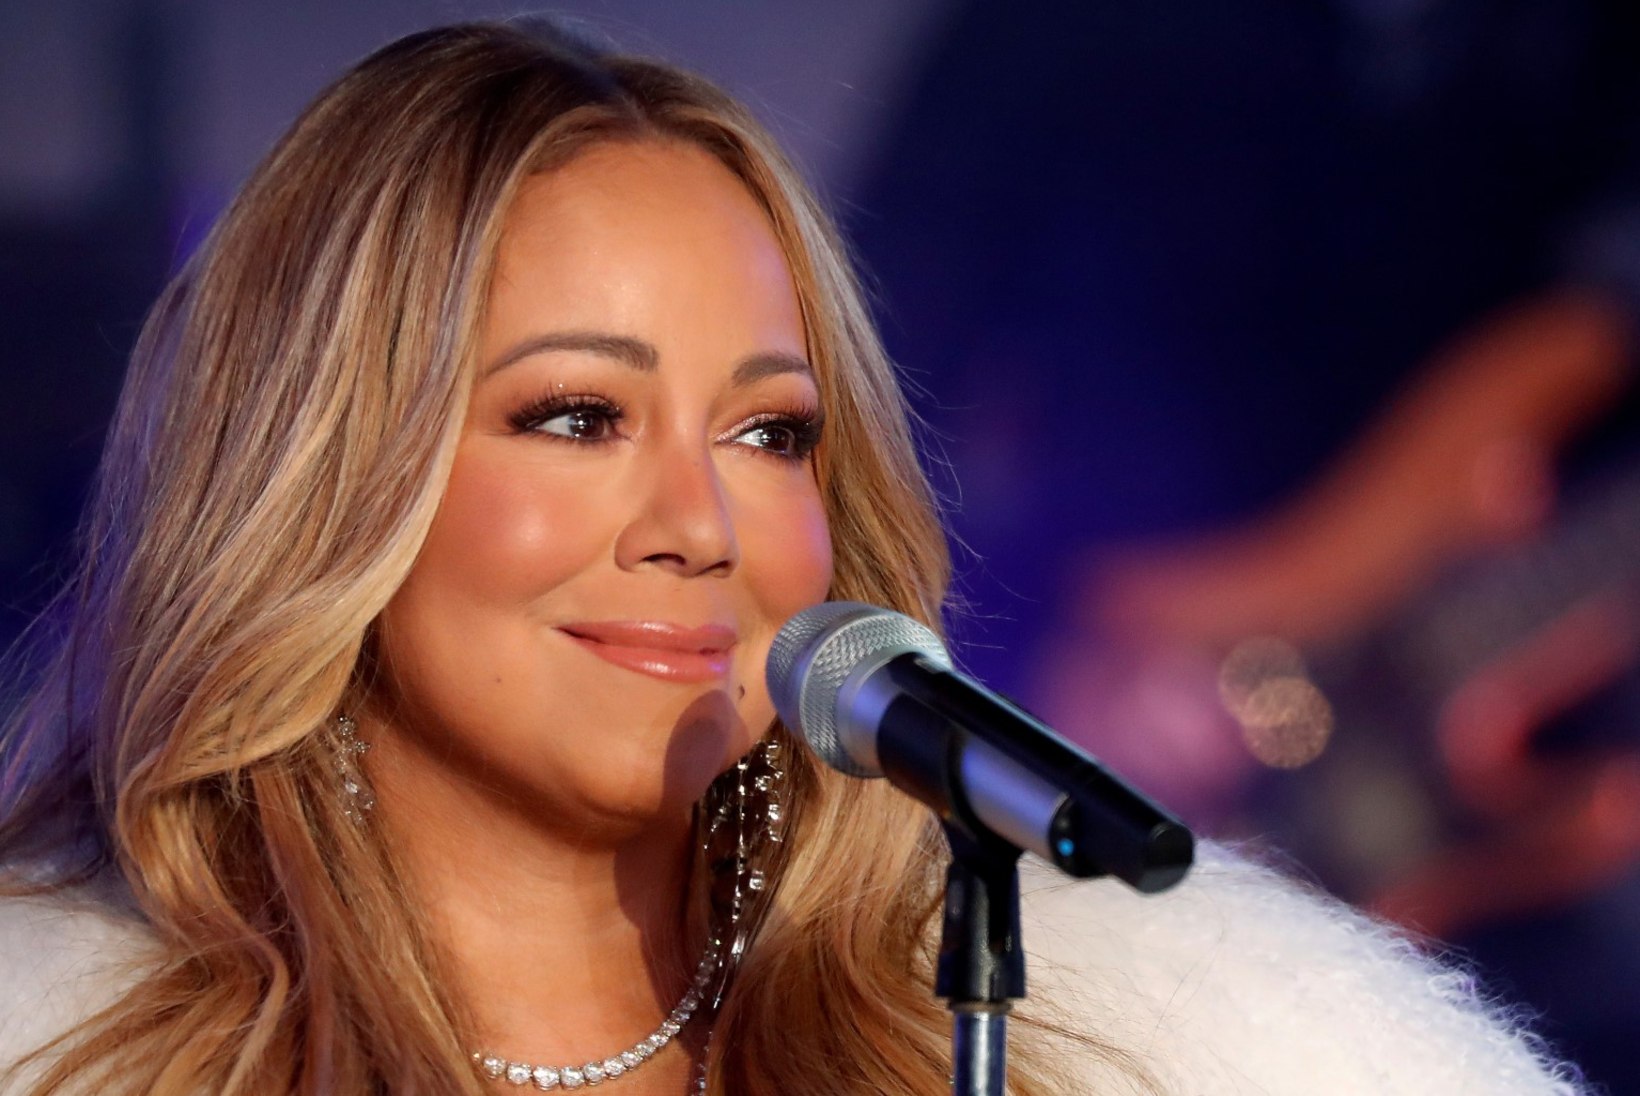 Assistent ähvardas Mariah Carey intiimvideod avalikustada